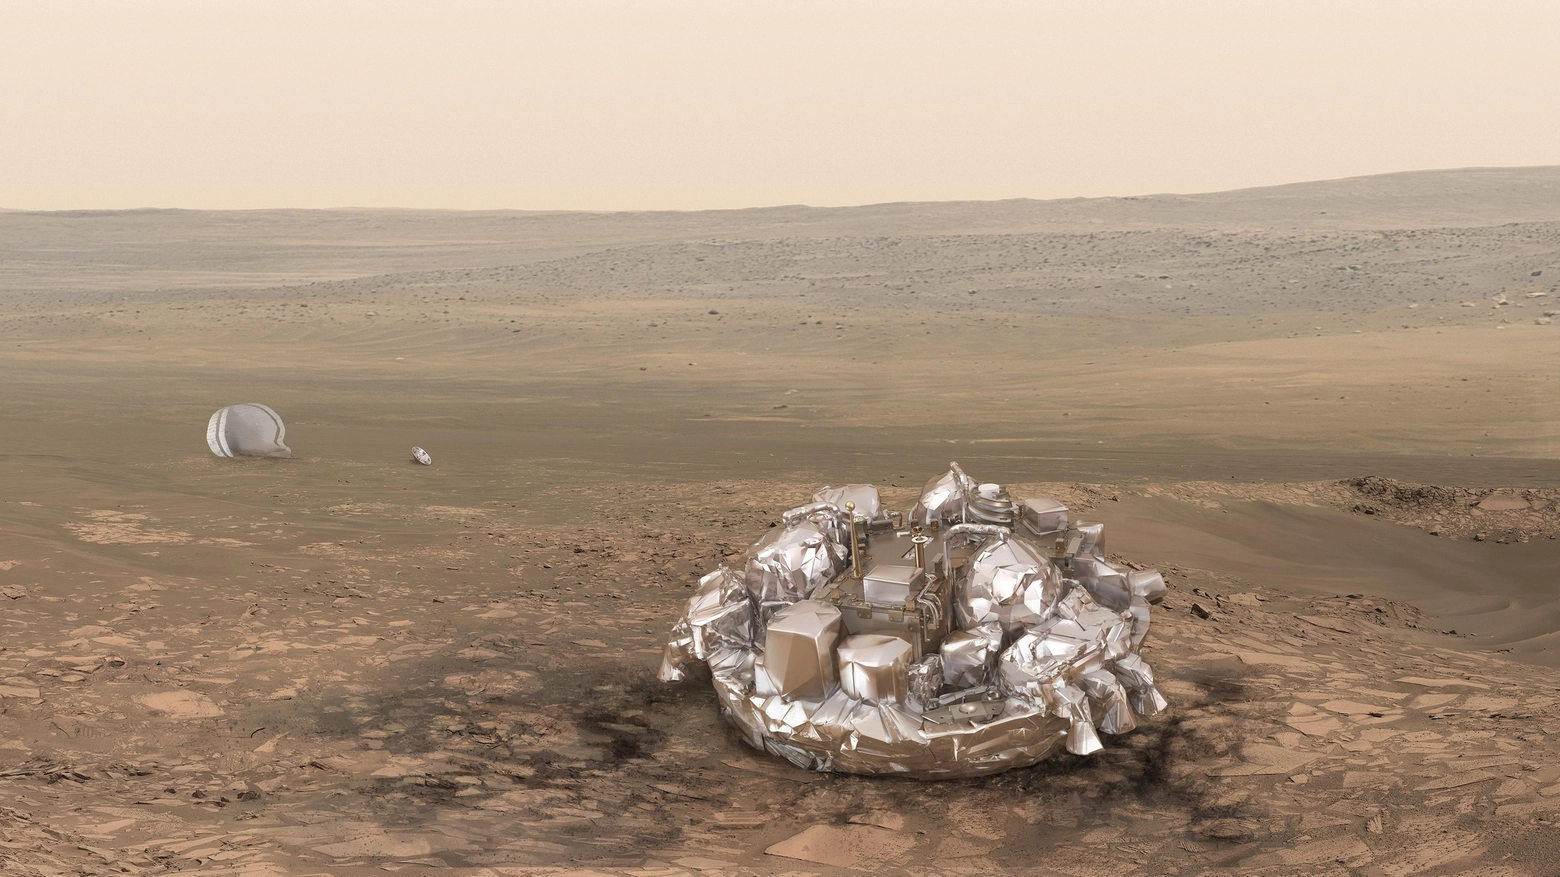 La sonda con la quale si sono persi i contatti su Marte